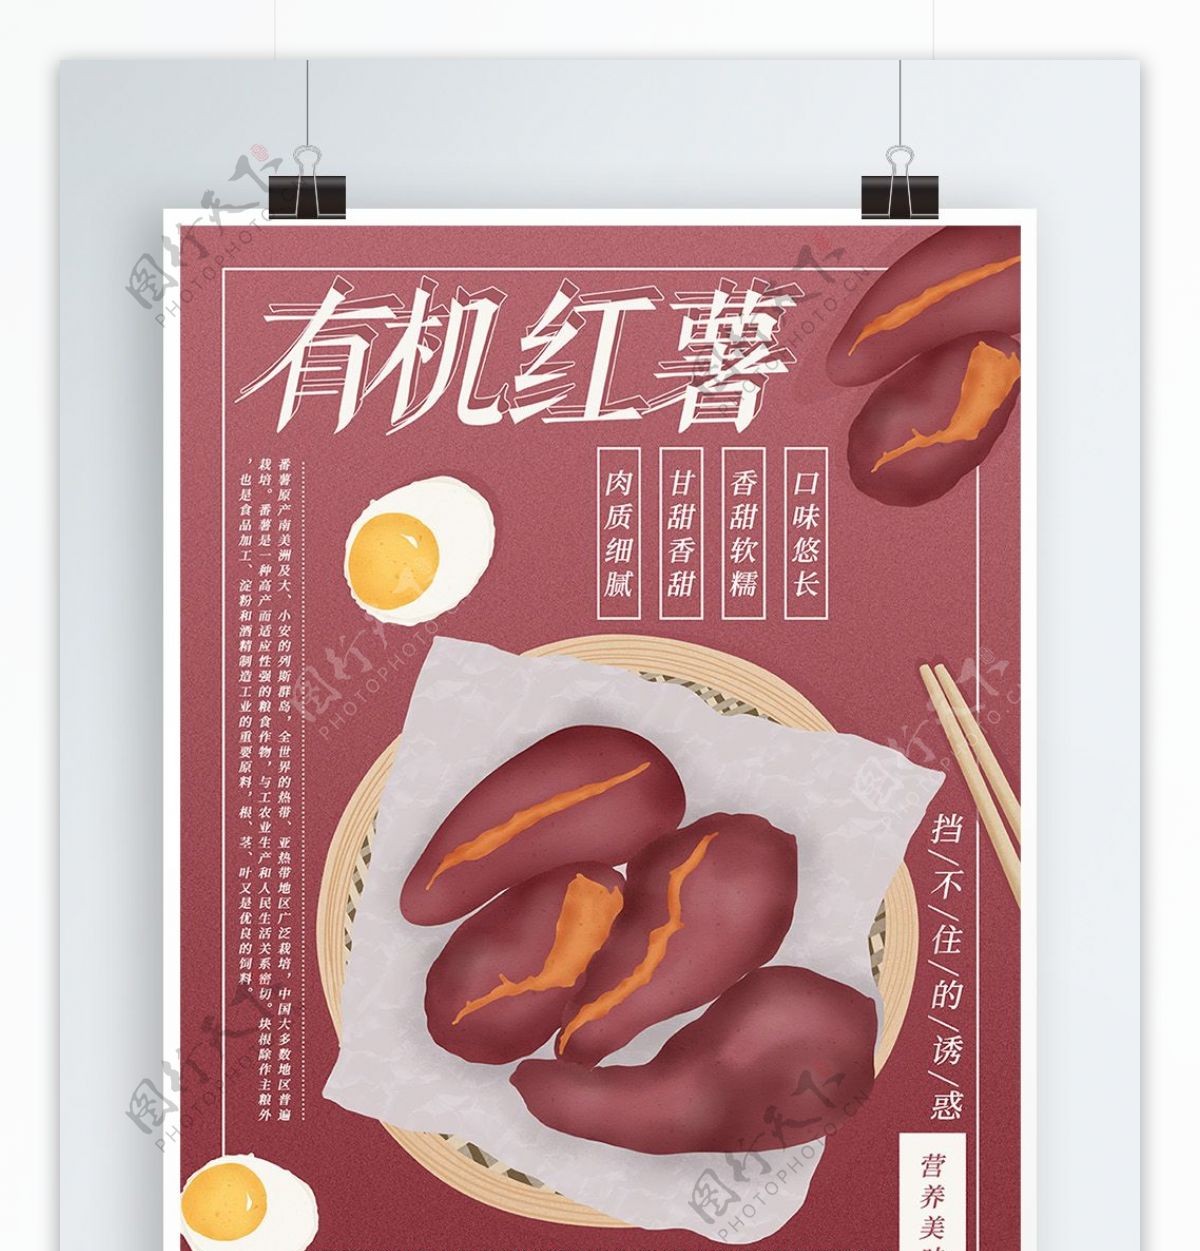 原创手绘小清新有机红薯美食主题海报